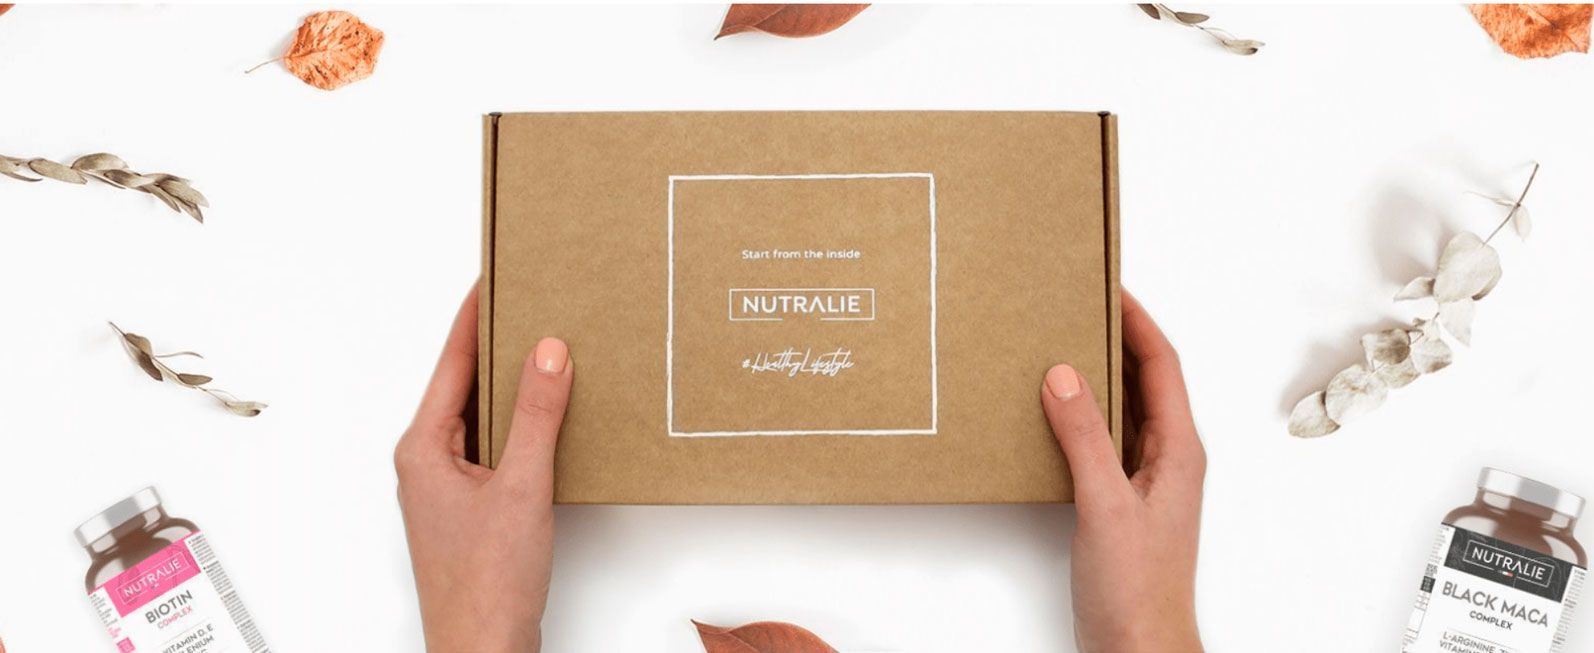 Nutralie confía en Lifting Group e Imagine Creative Ideas para el restyling de la marca